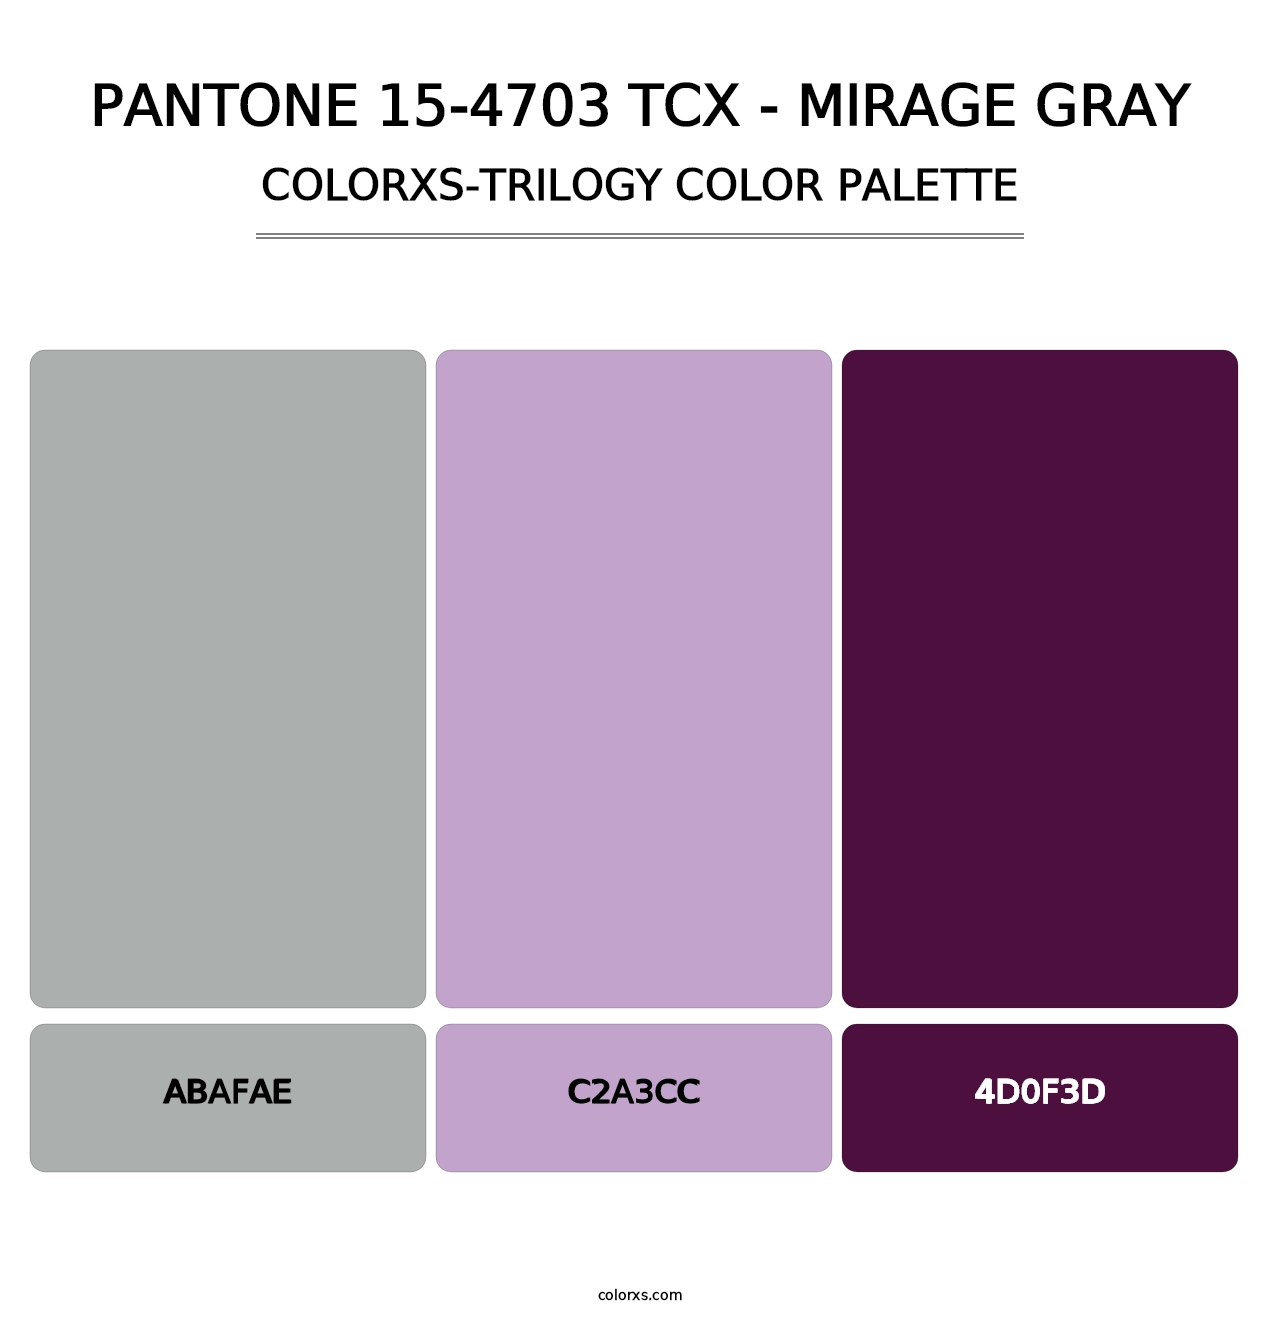 PANTONE 15-4703 TCX - Mirage Gray - Colorxs Trilogy Palette